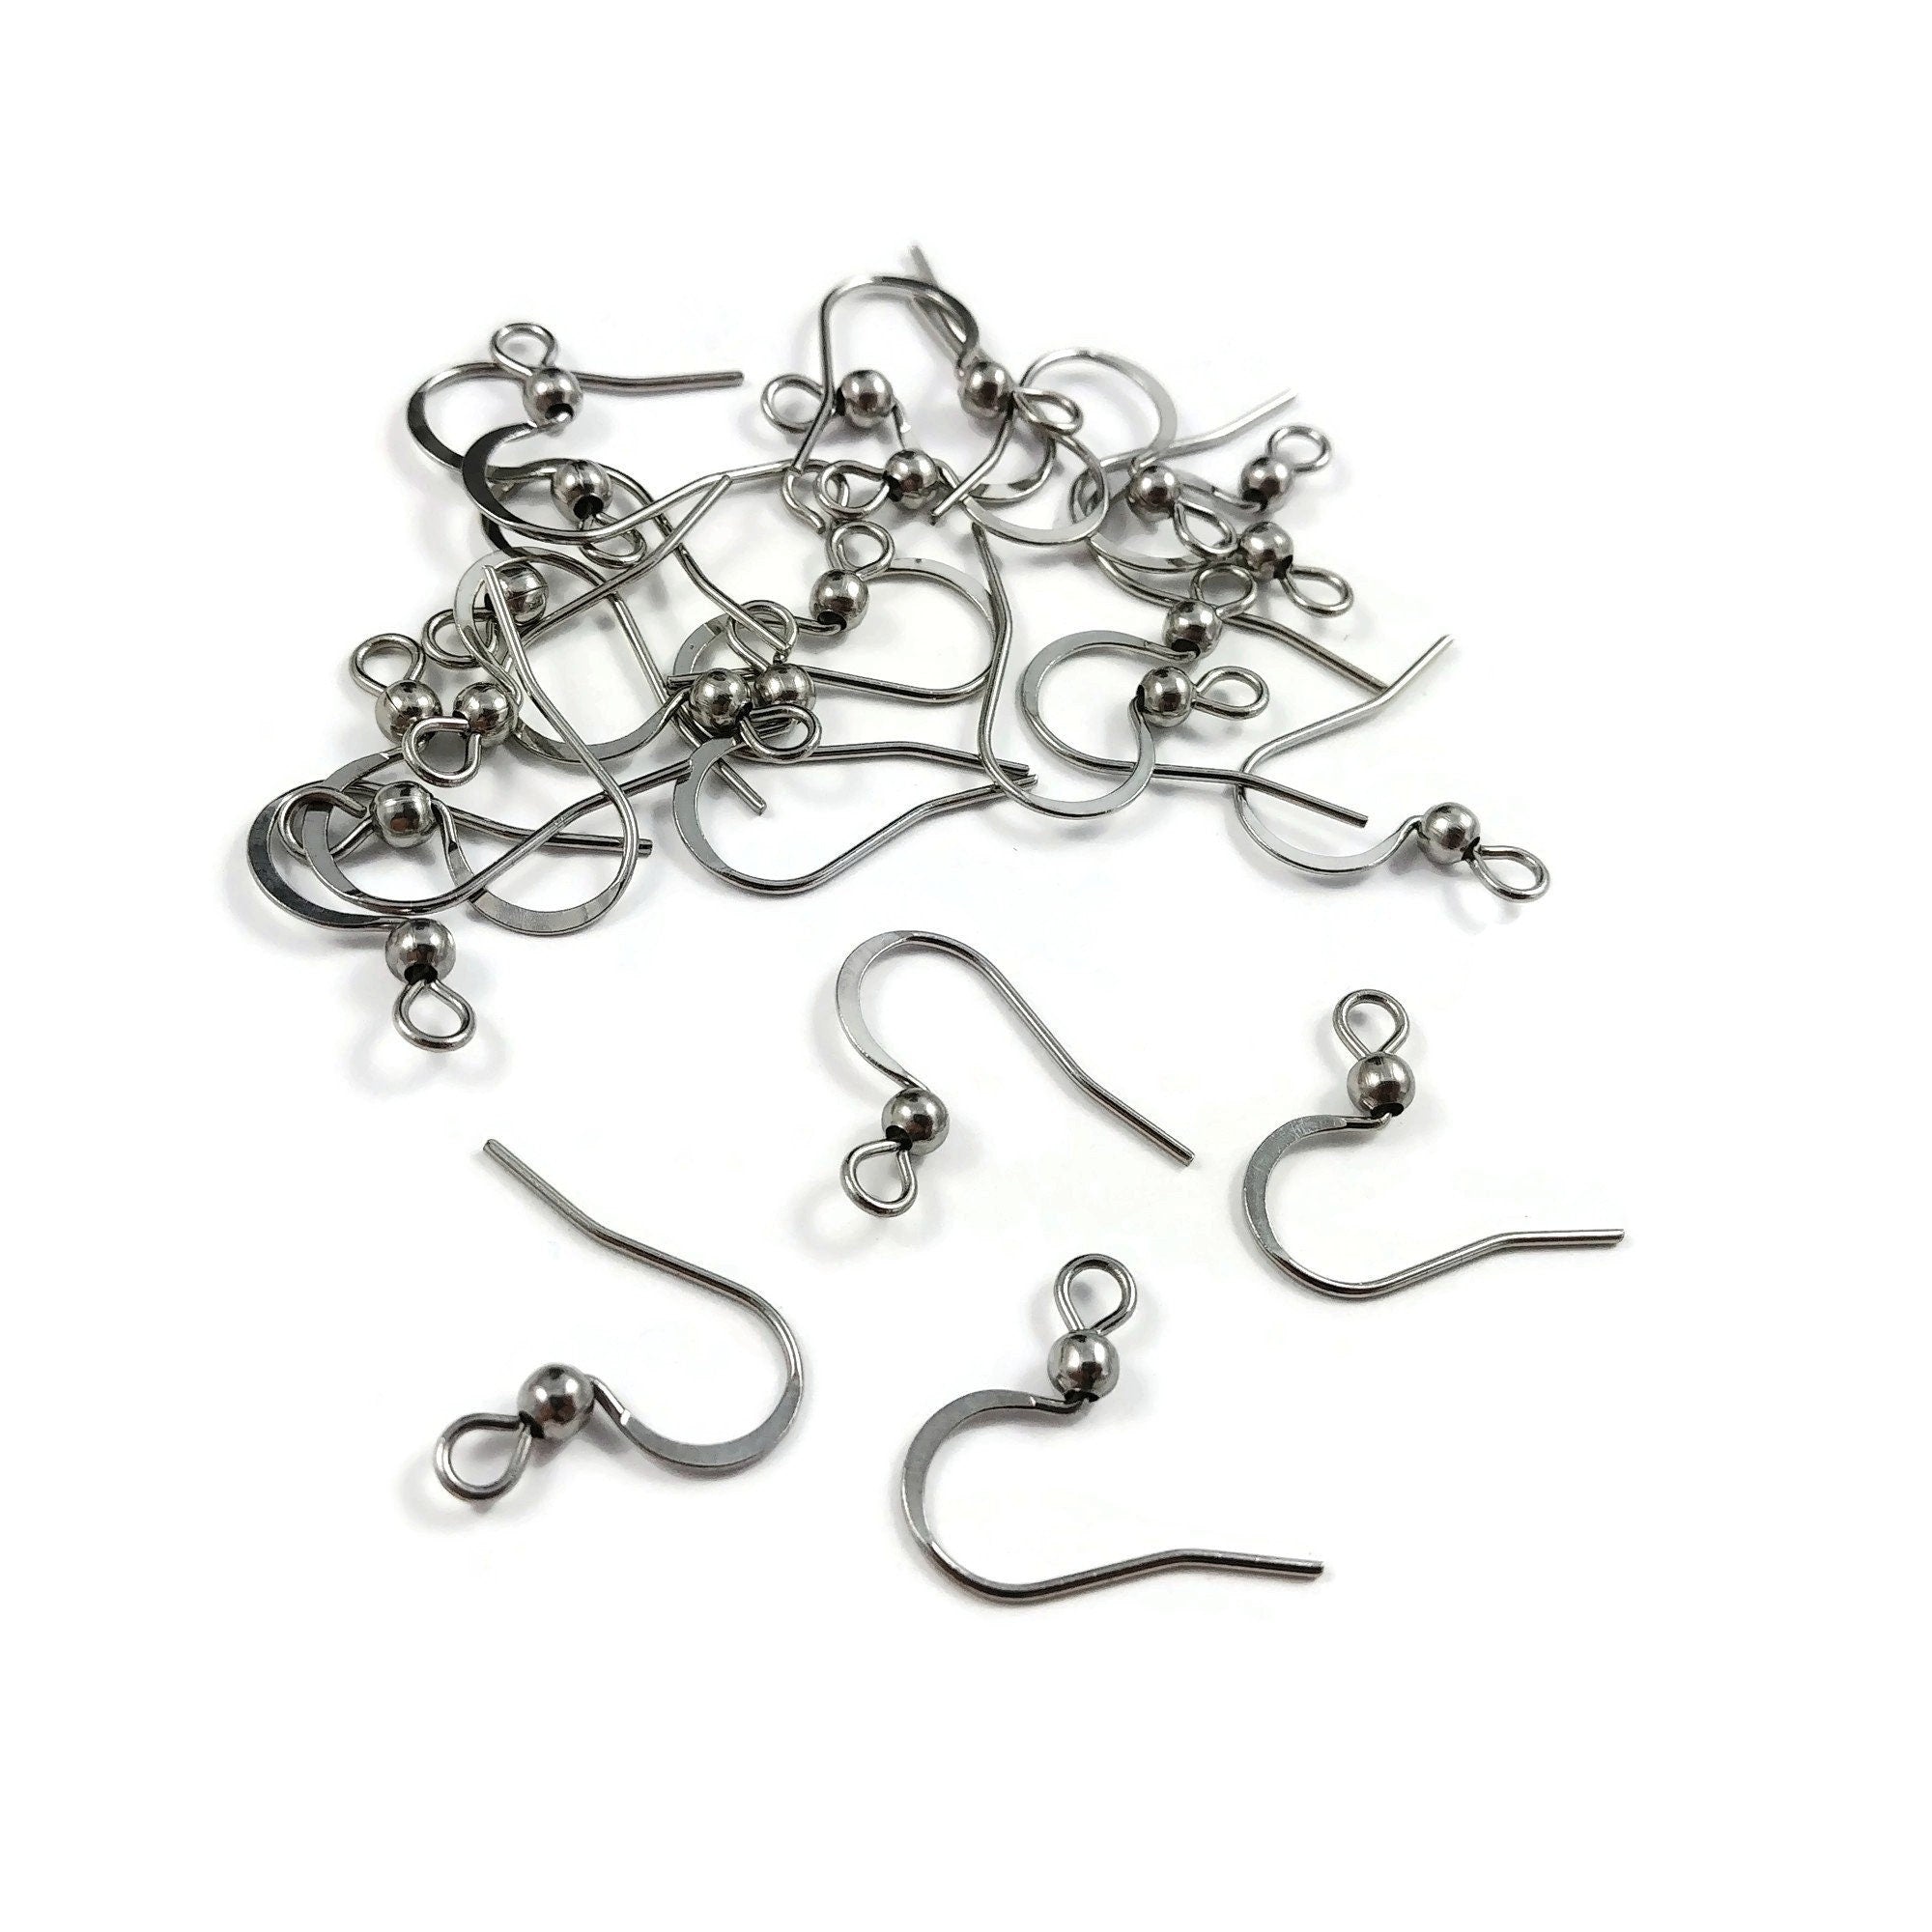 50pcs Wholesale Gold Leverback Earring Hooks Ear Wire Loops 